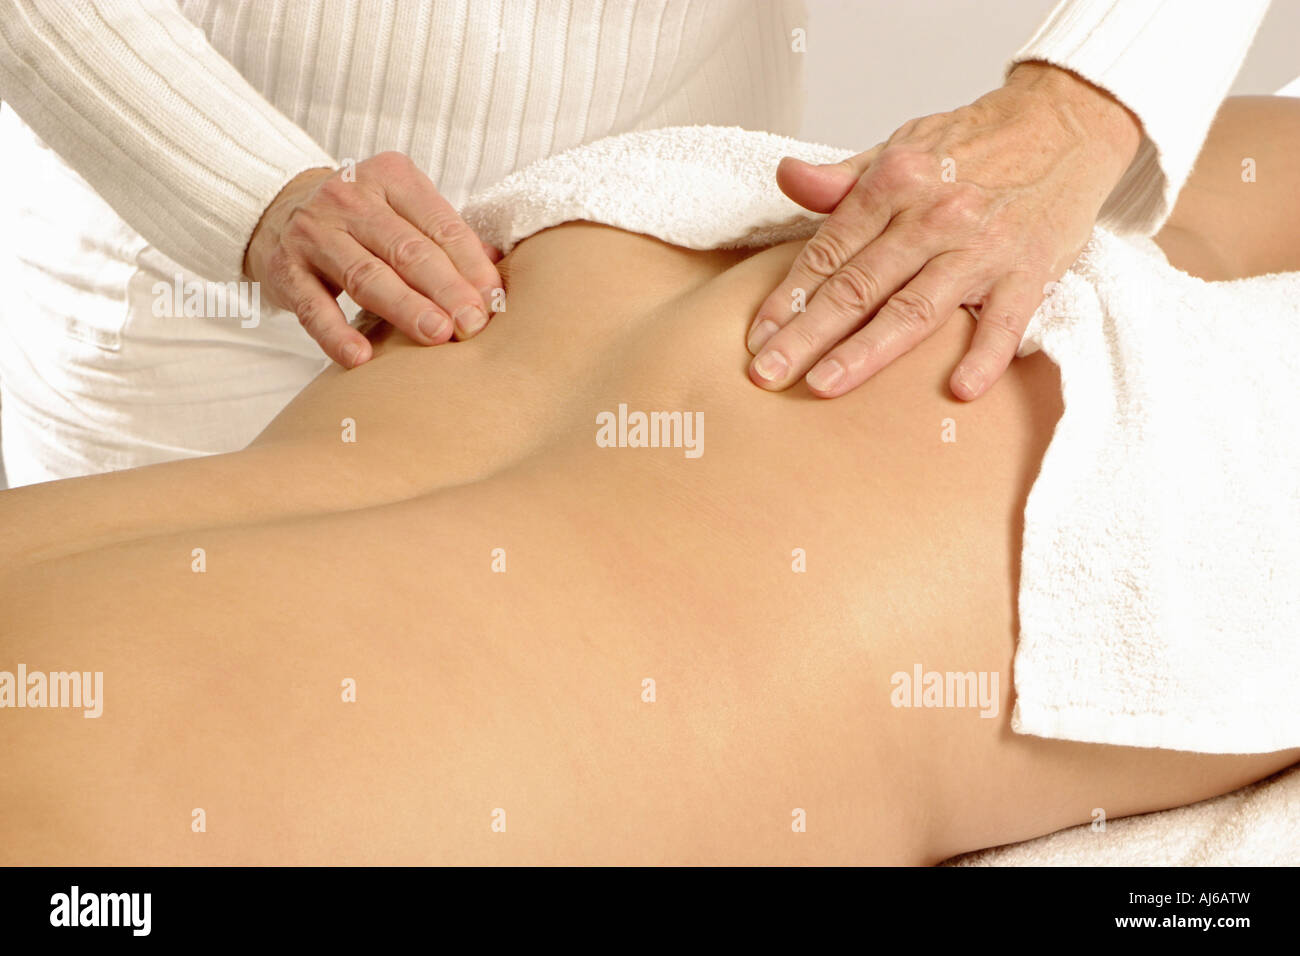 Une autre femme massage femme est de retour Photo Stock - Alamy